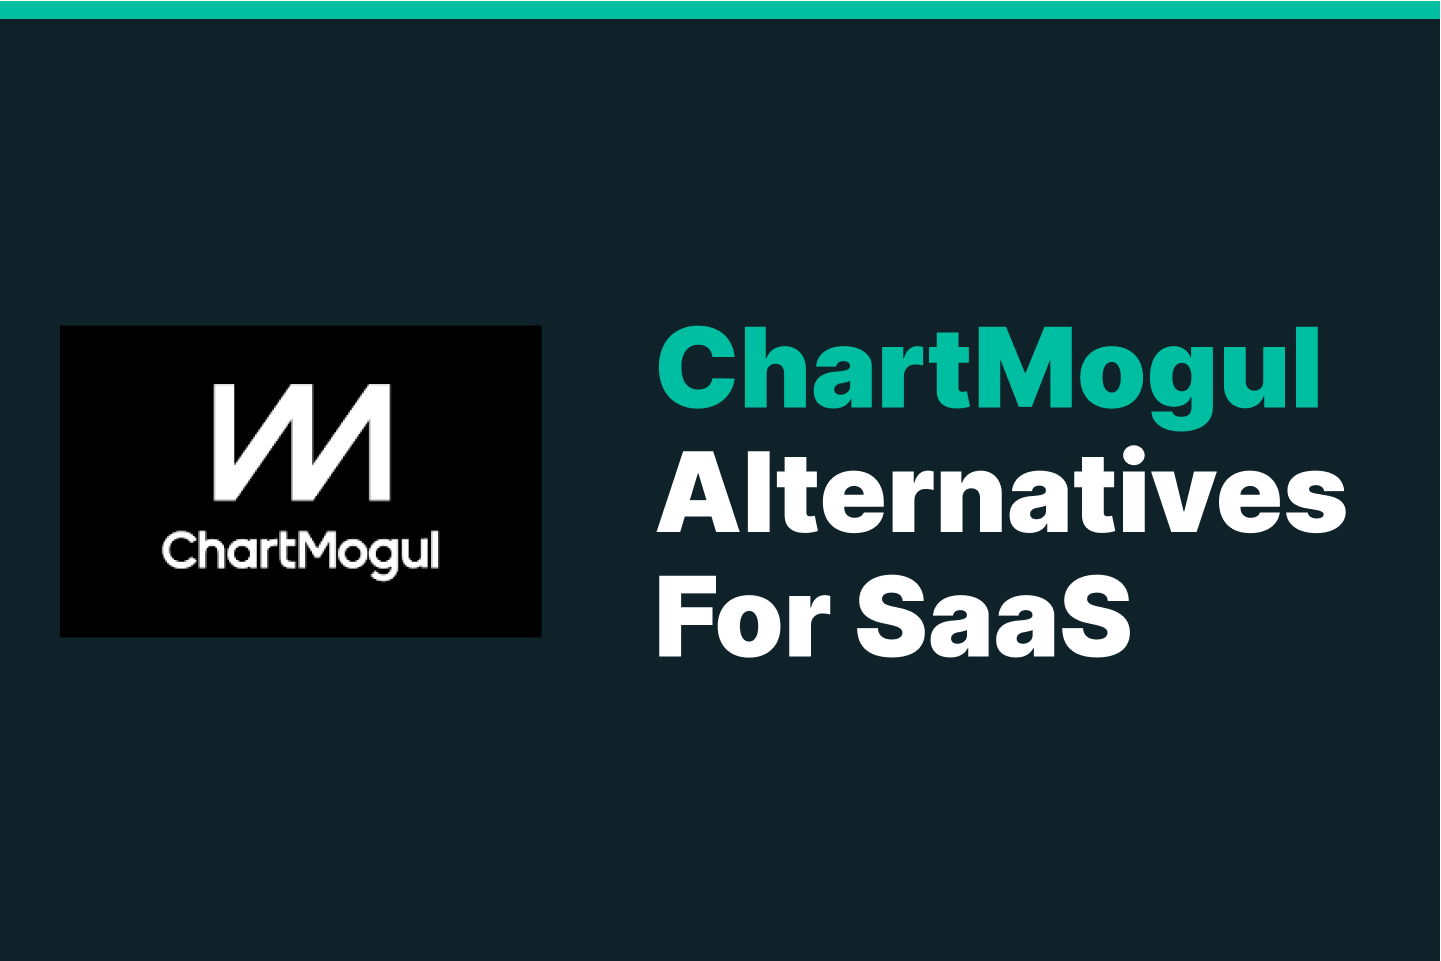 ChartMogul Alternatives